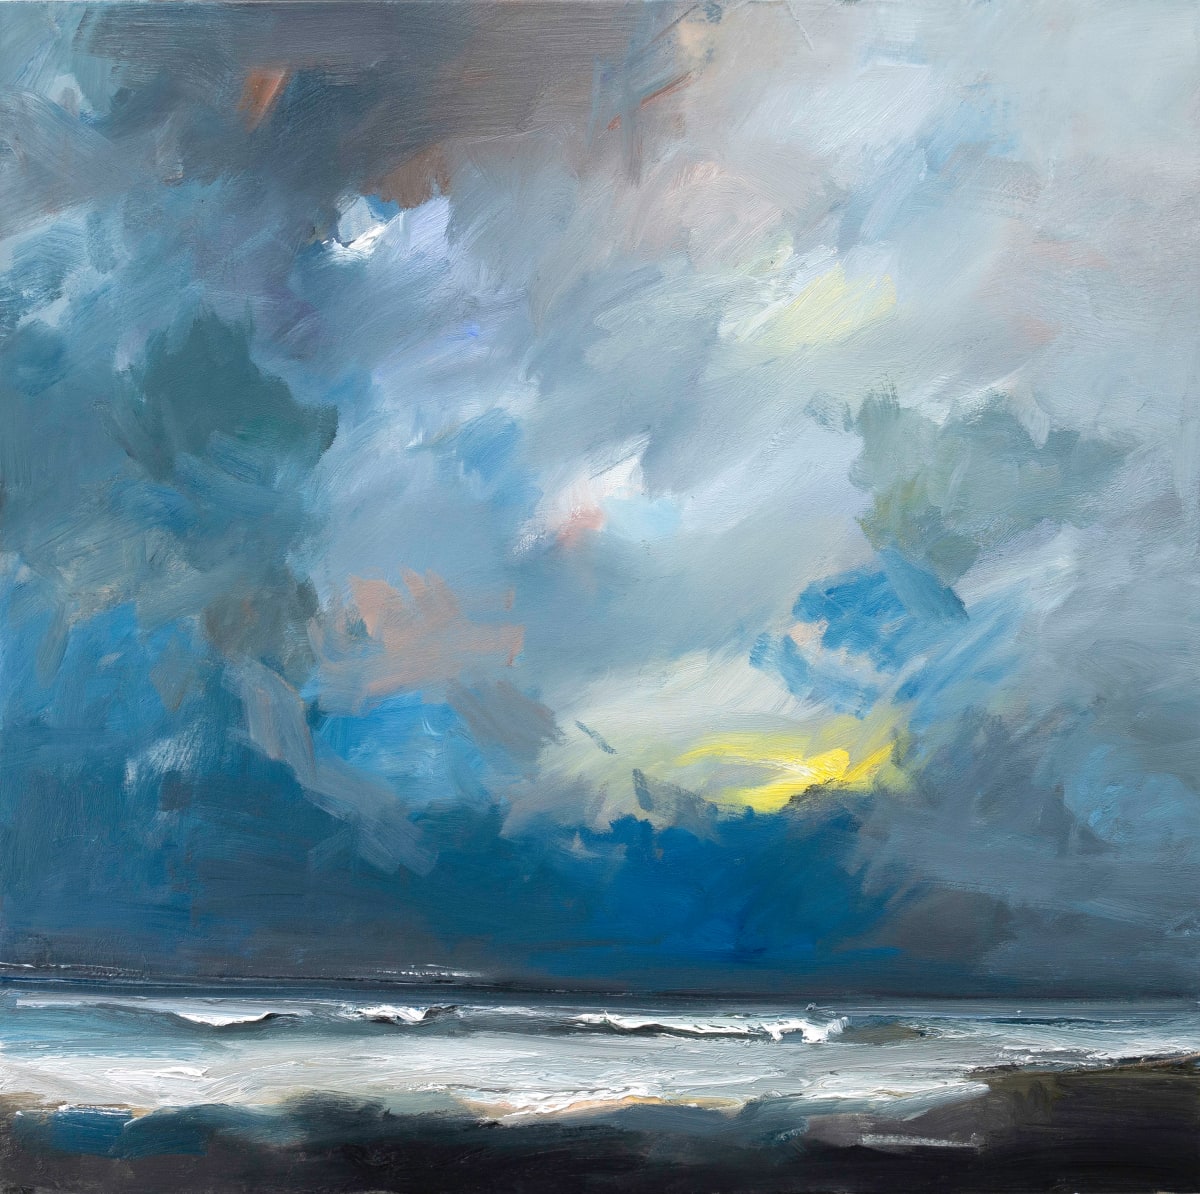 The North Sea at High Tide by David Atkins 